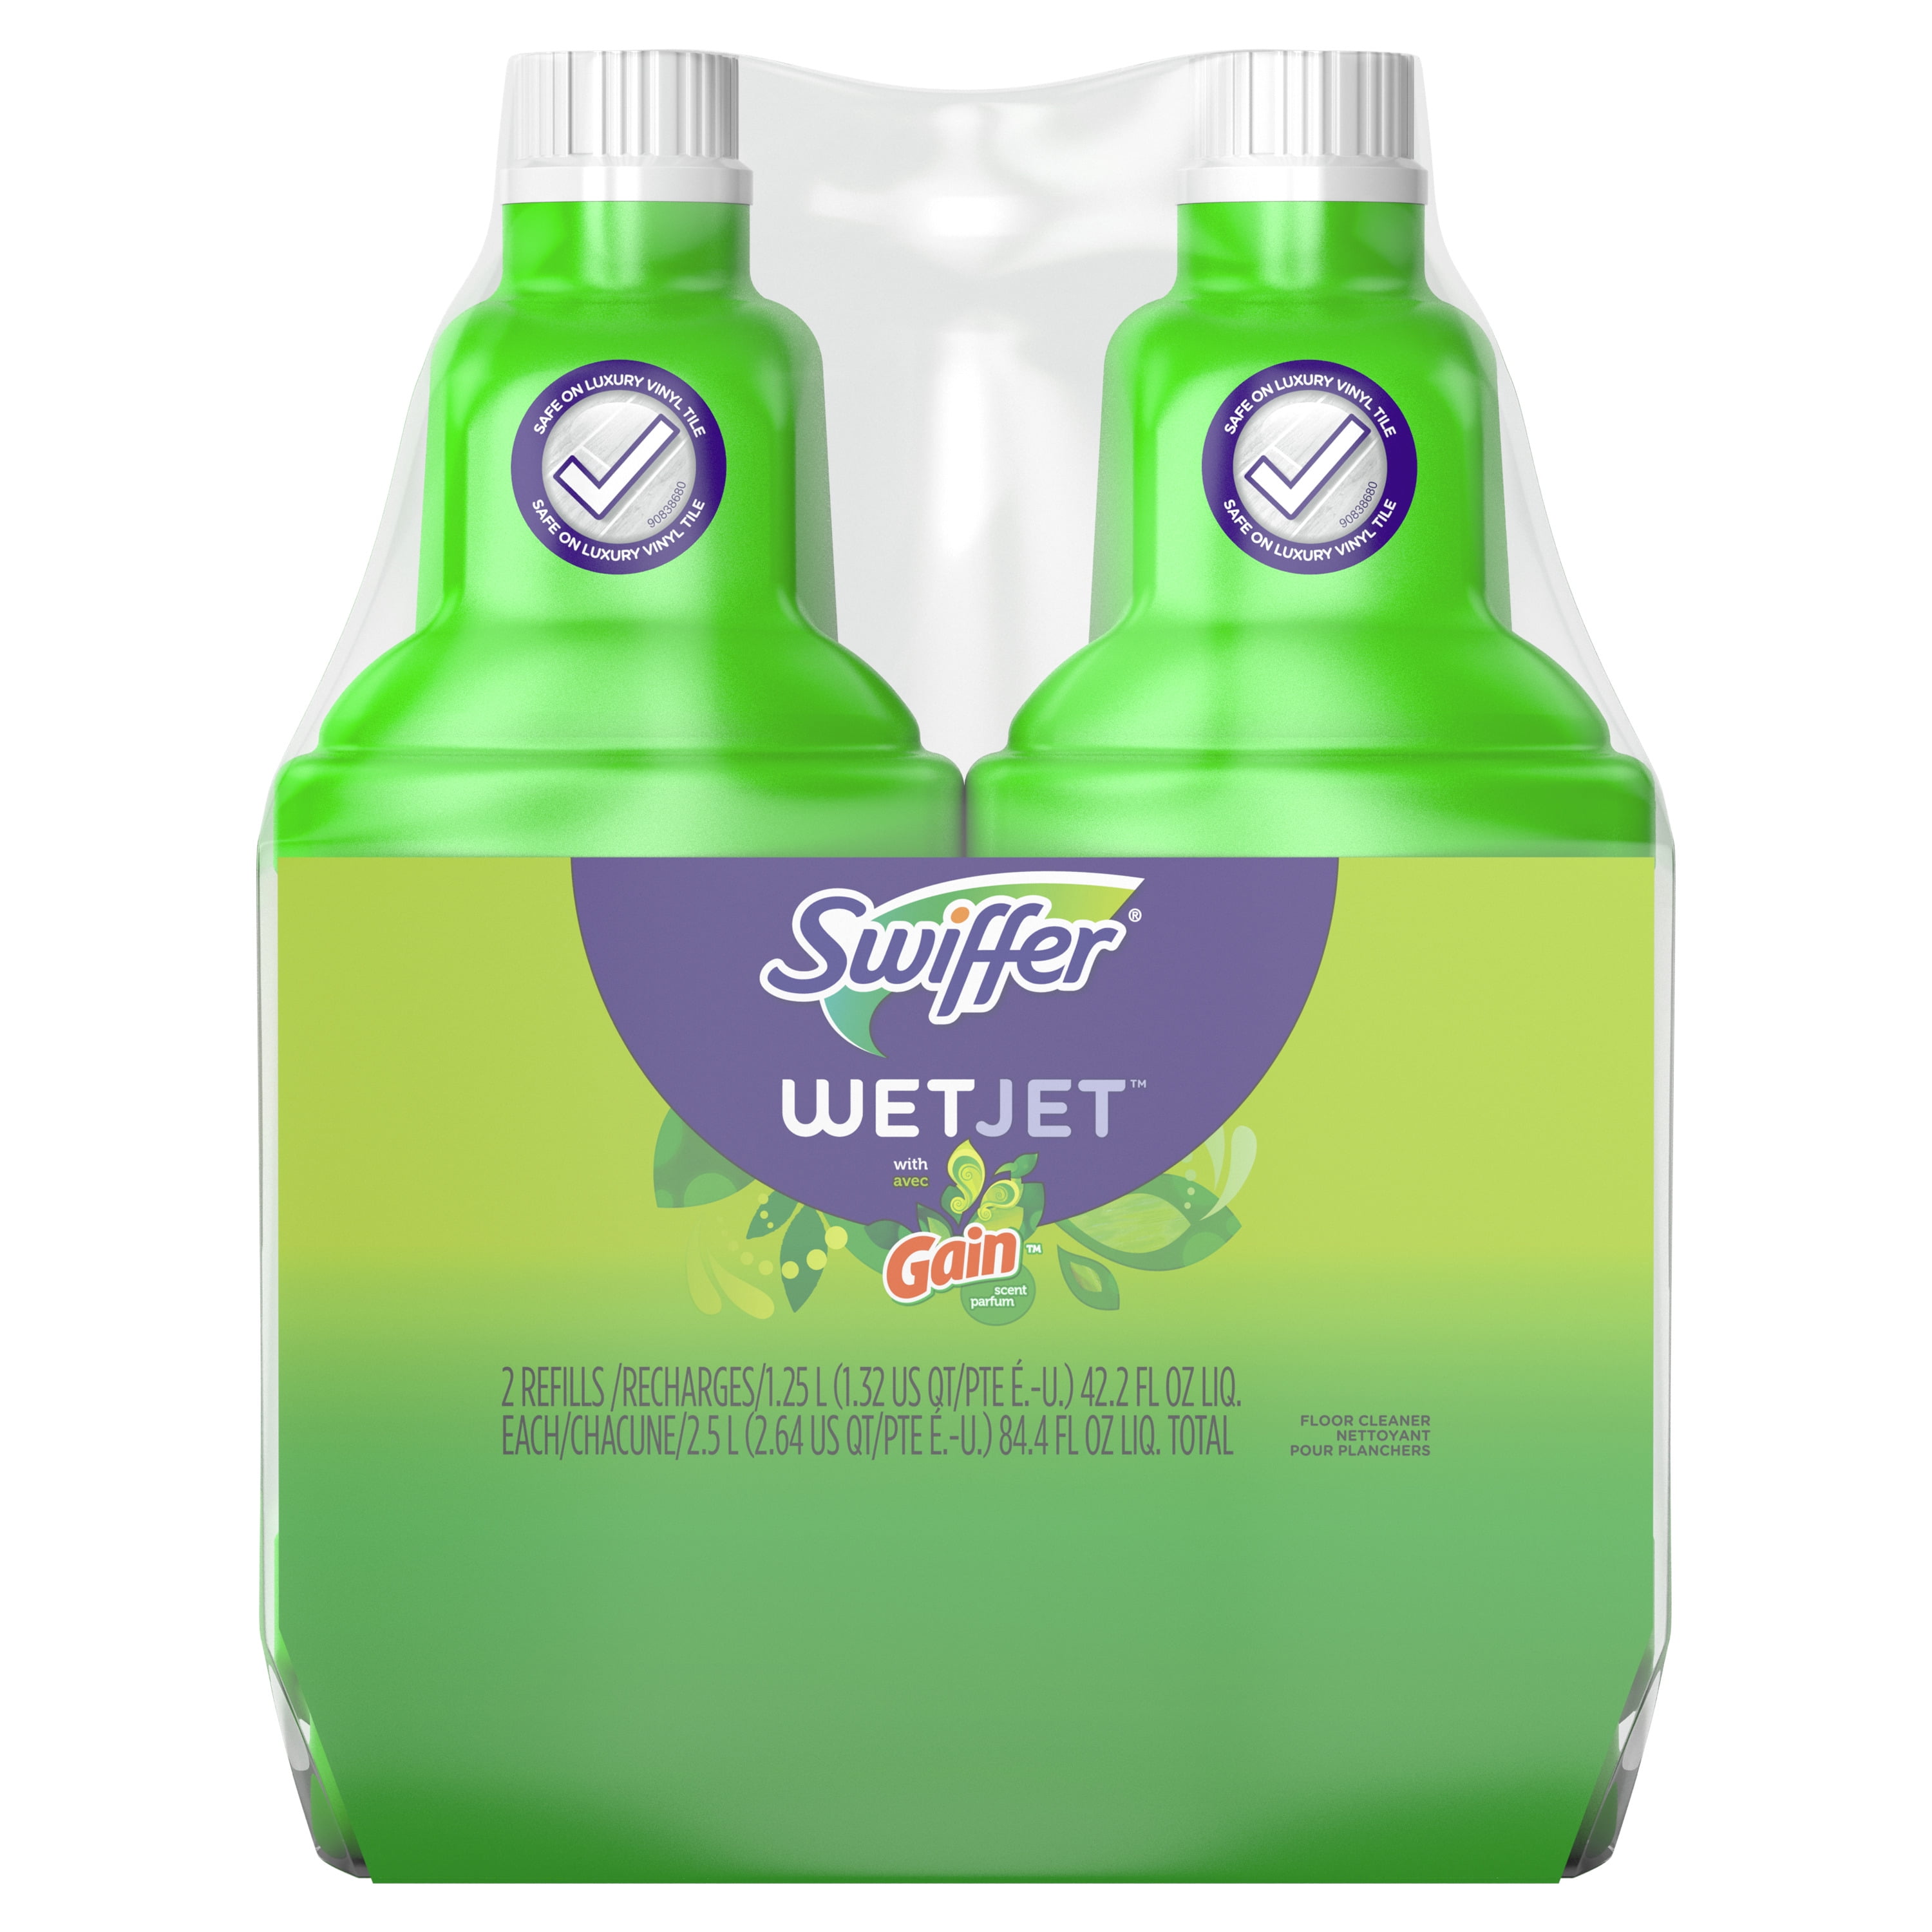 Swiffer WetJet Floor Cleaner, Gain Scent - 2 - 1.25 l (1.32 qt) 42.2 fl oz liq refills [2.5 l (2.64 qt) 84.4 fl oz]